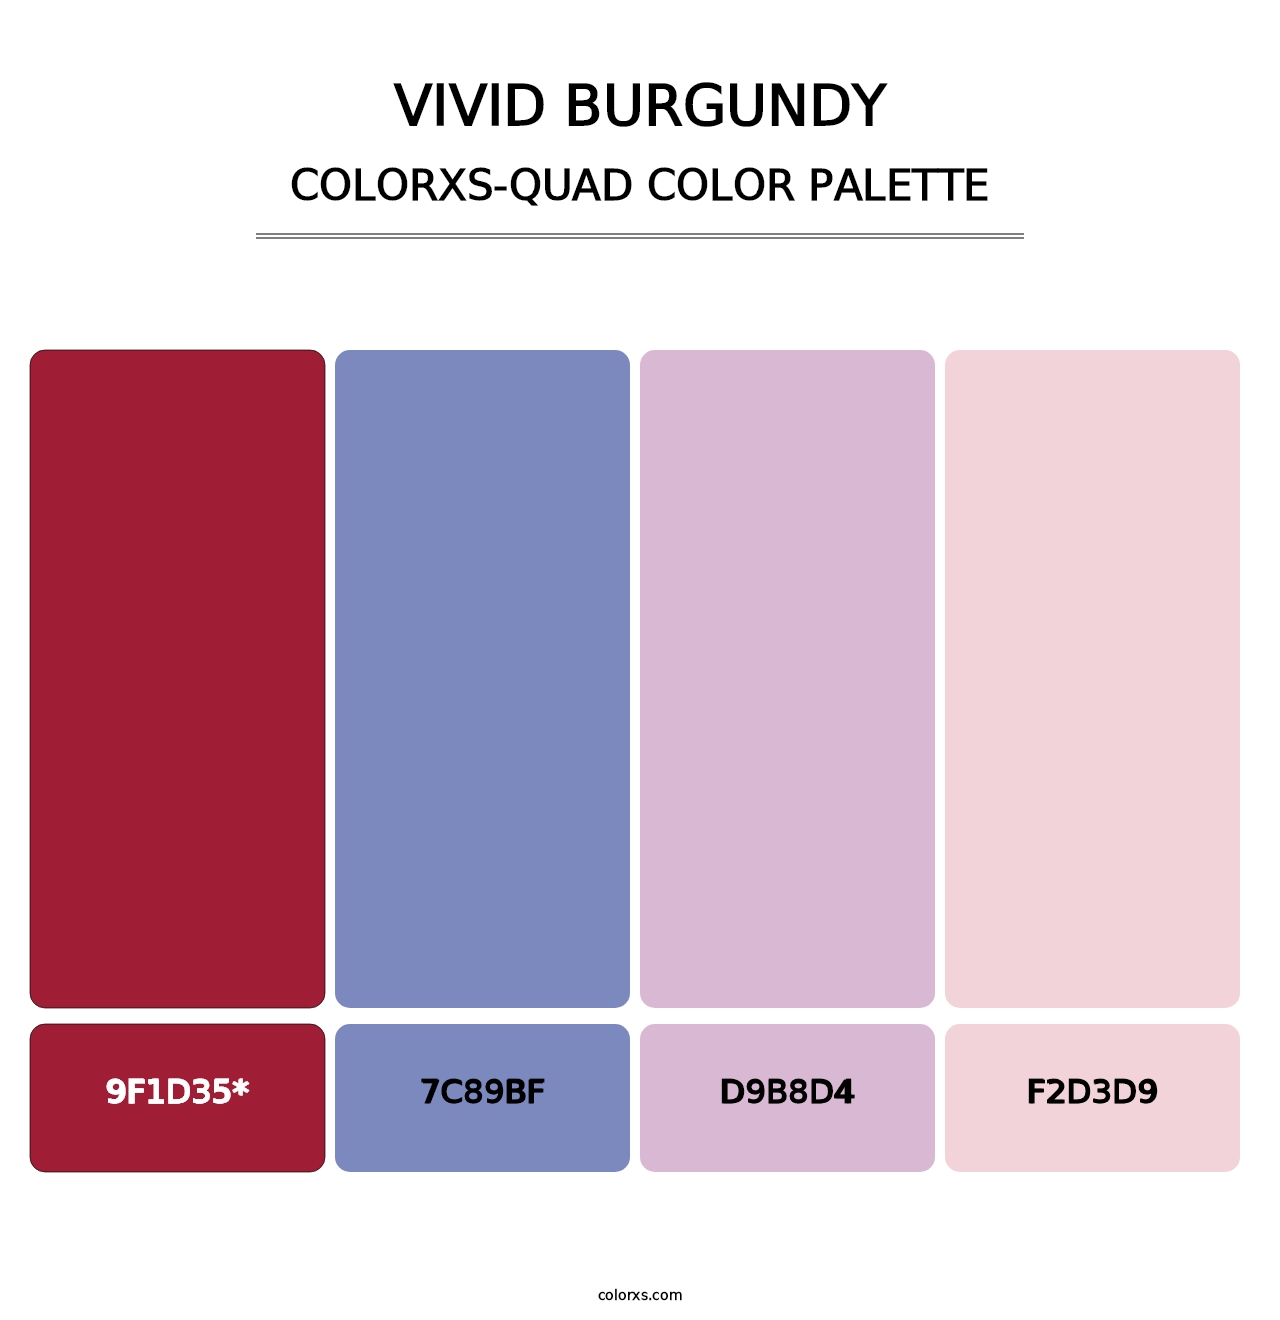 Vivid Burgundy - Colorxs Quad Palette